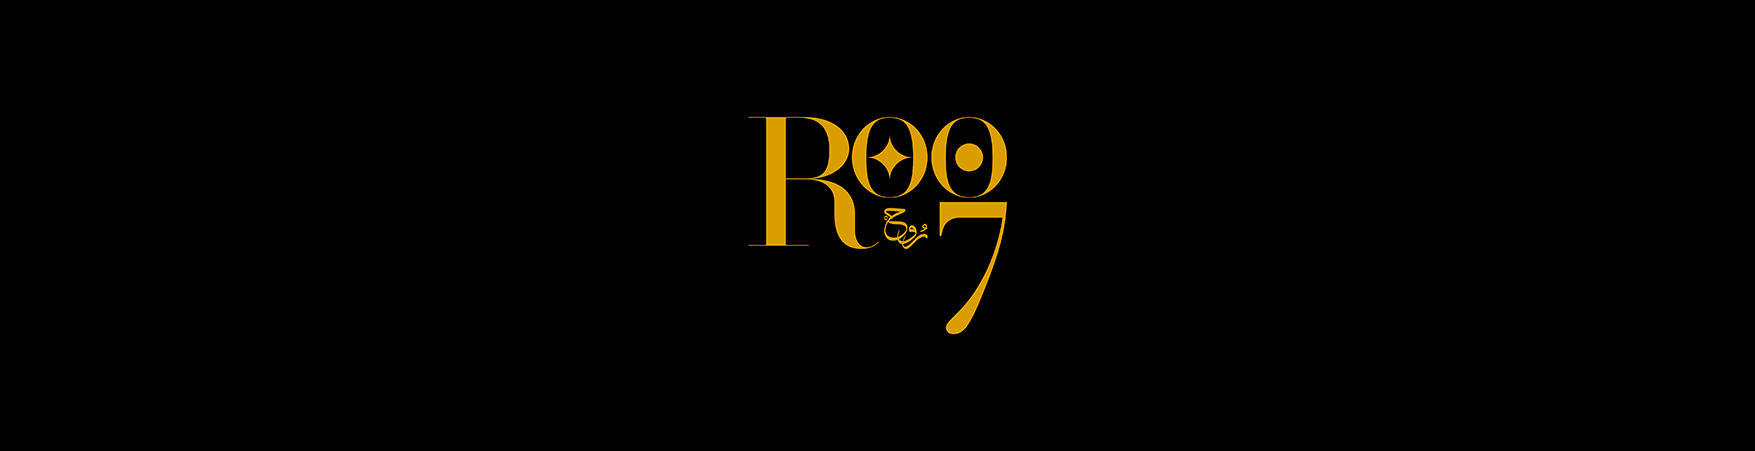 Roo7